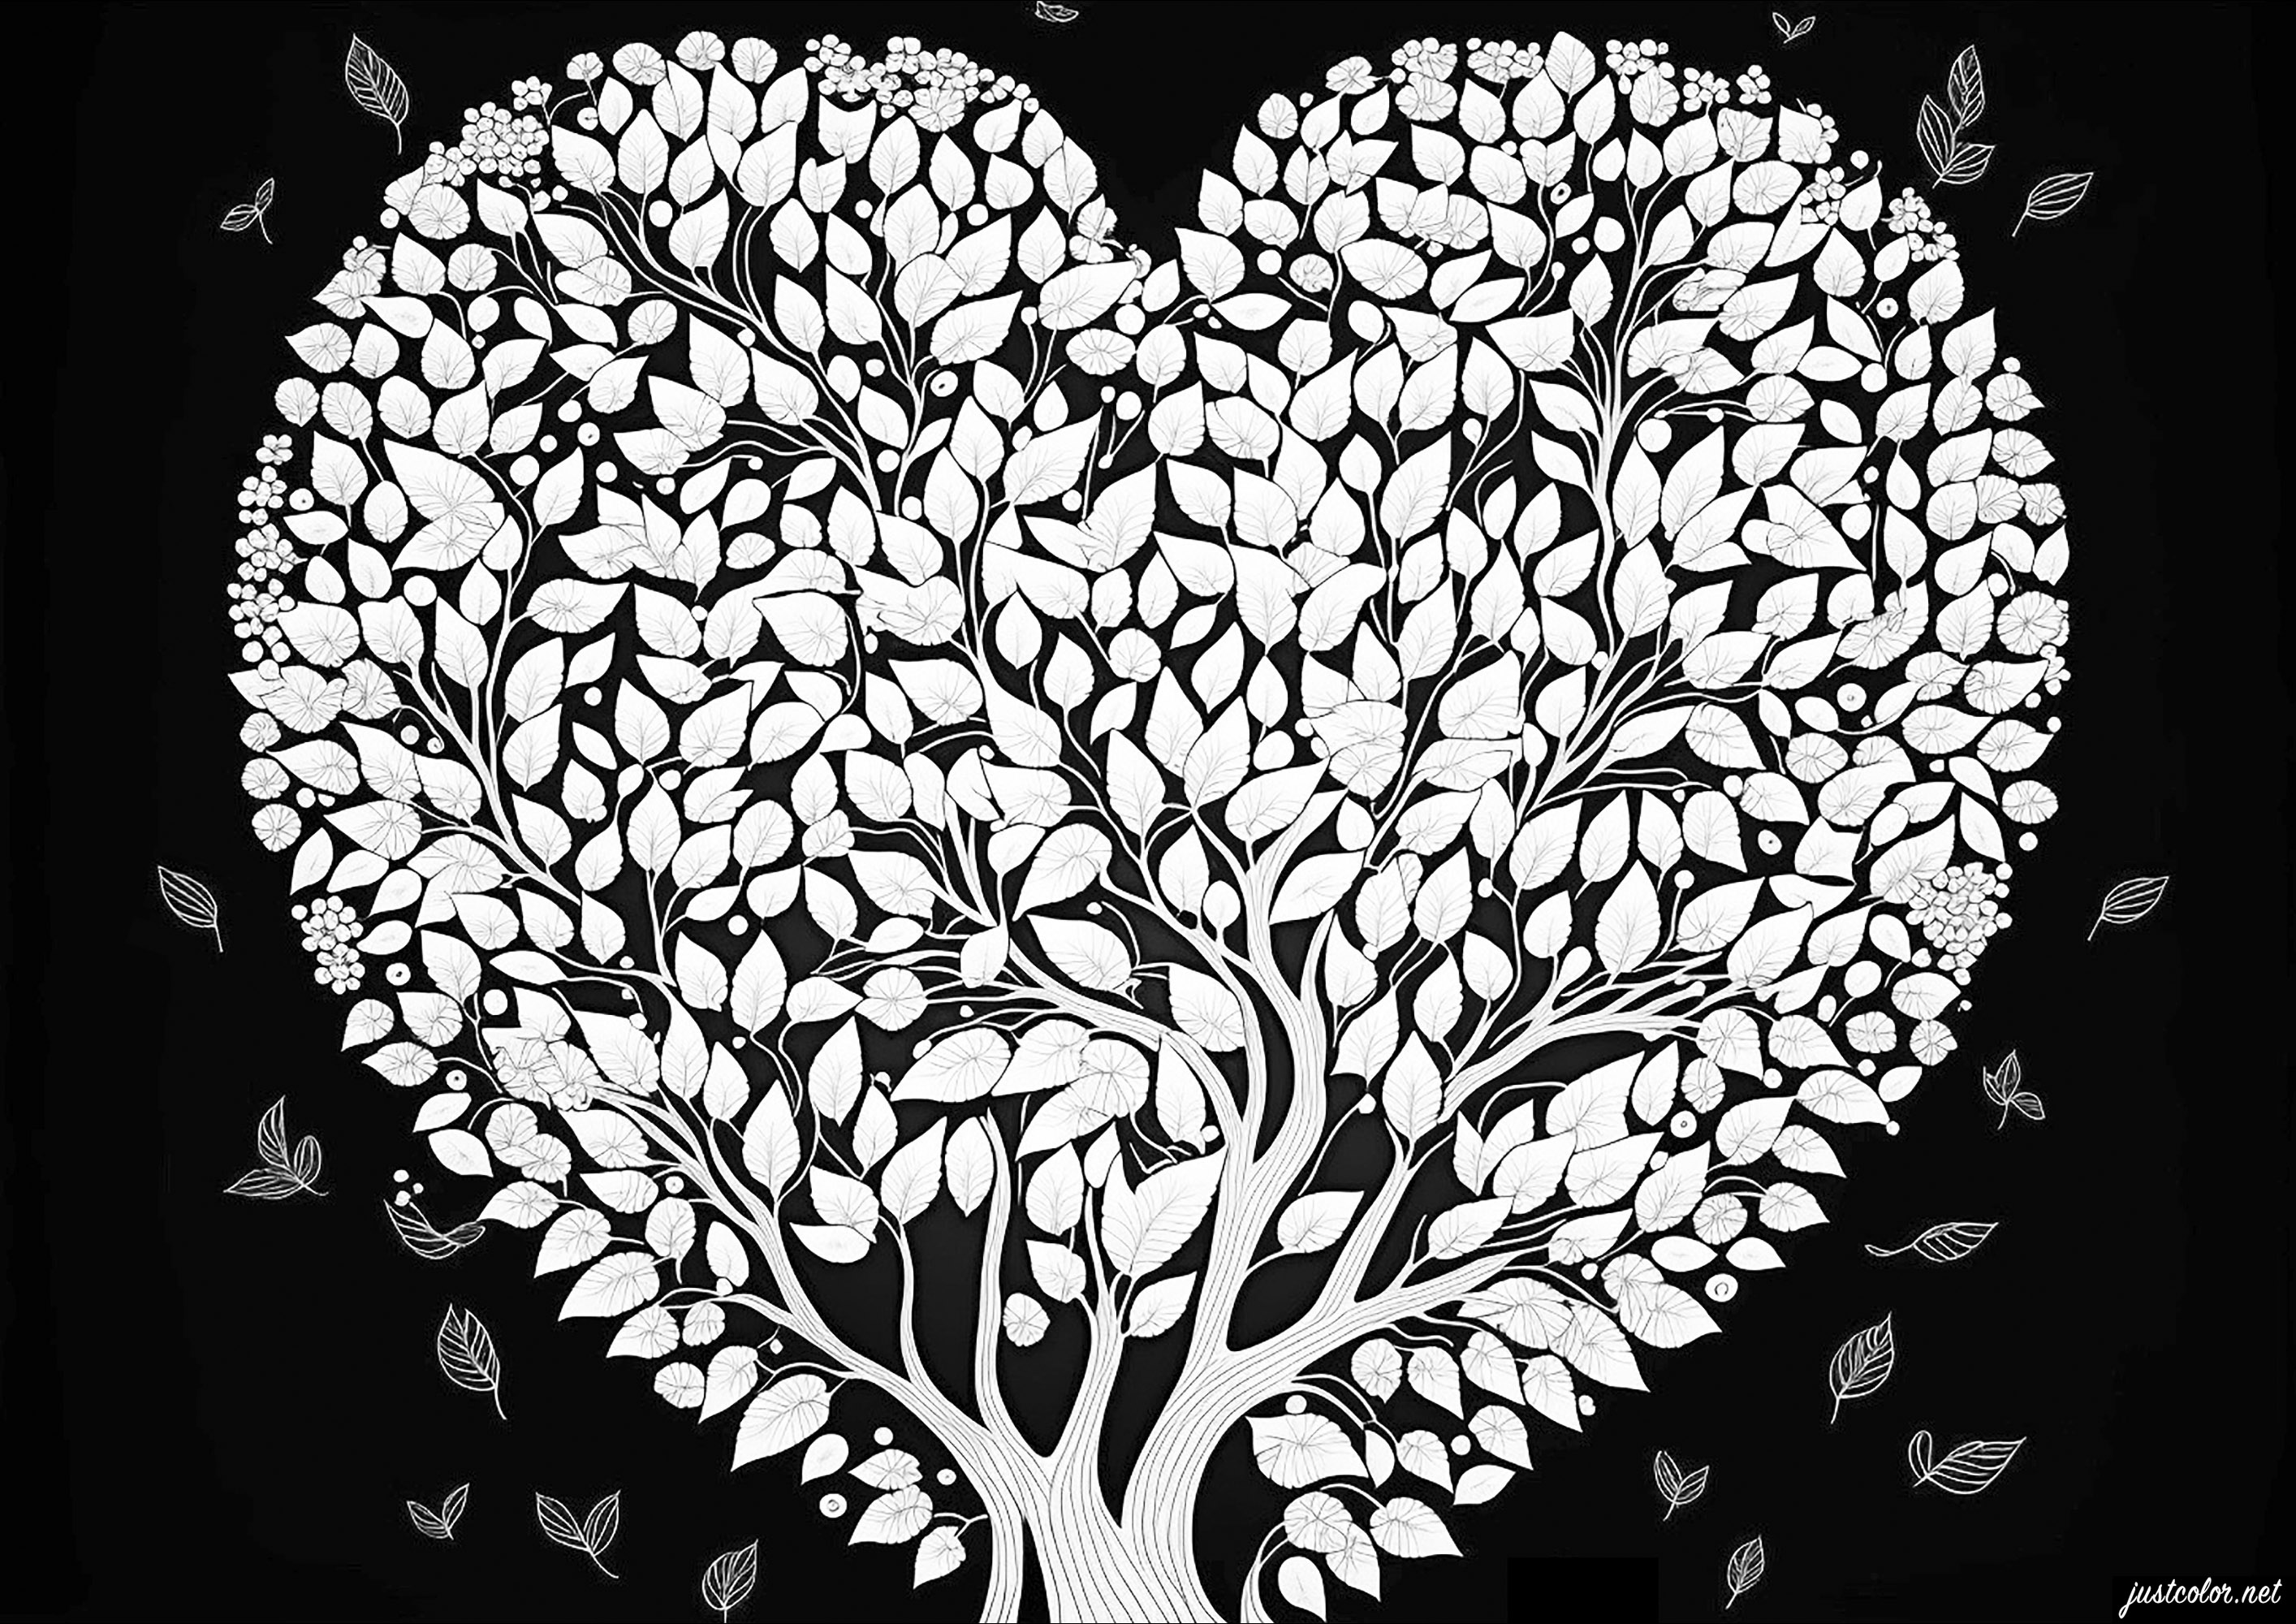 Arbre d'amour sur un fond noir. Coloriez ce magnifique arbre en forme de coeur, et ses nombreuses fleurs élégantes, Artiste : IAsabelle